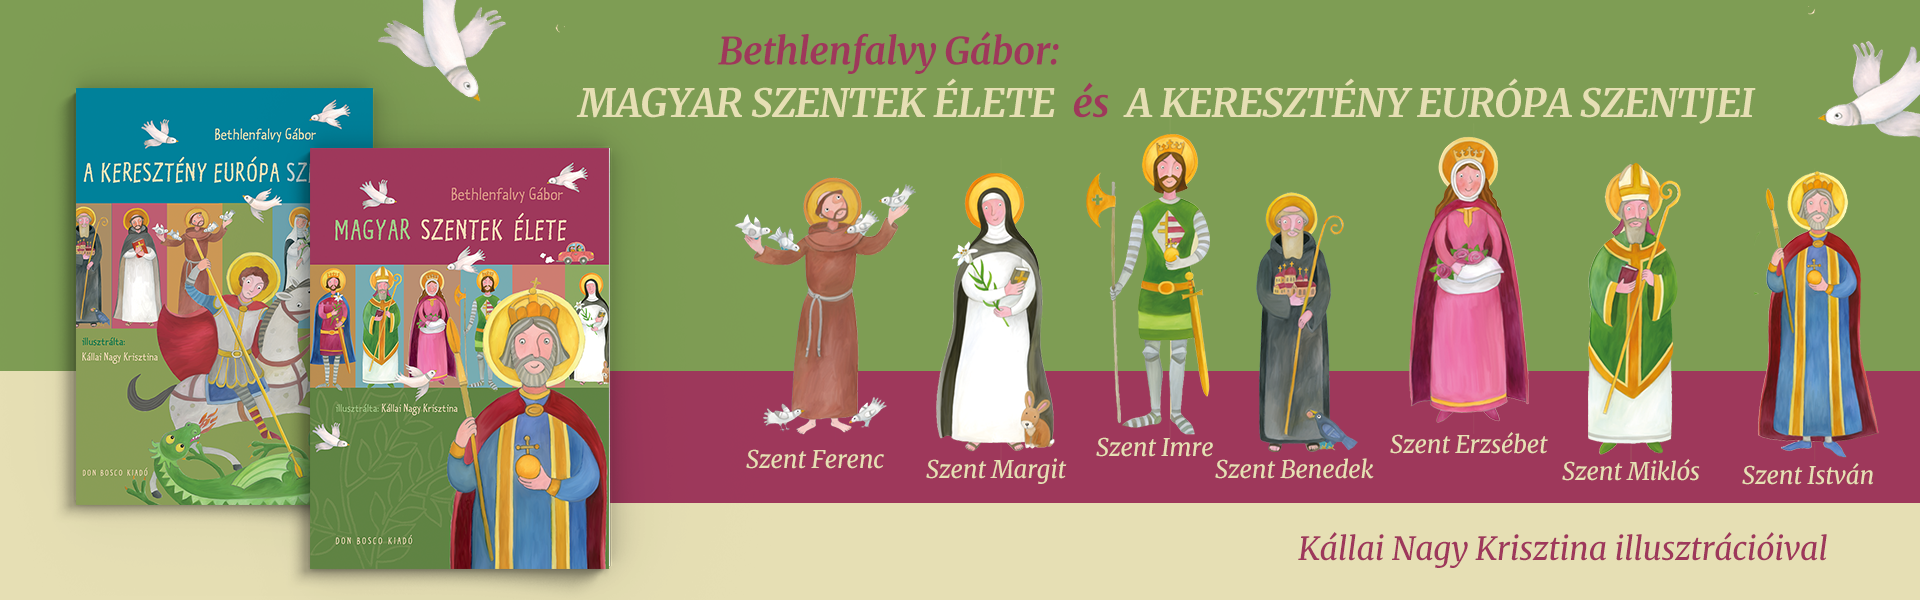 Magyar Szentek élete és A keresztény Európa Szentjei slide